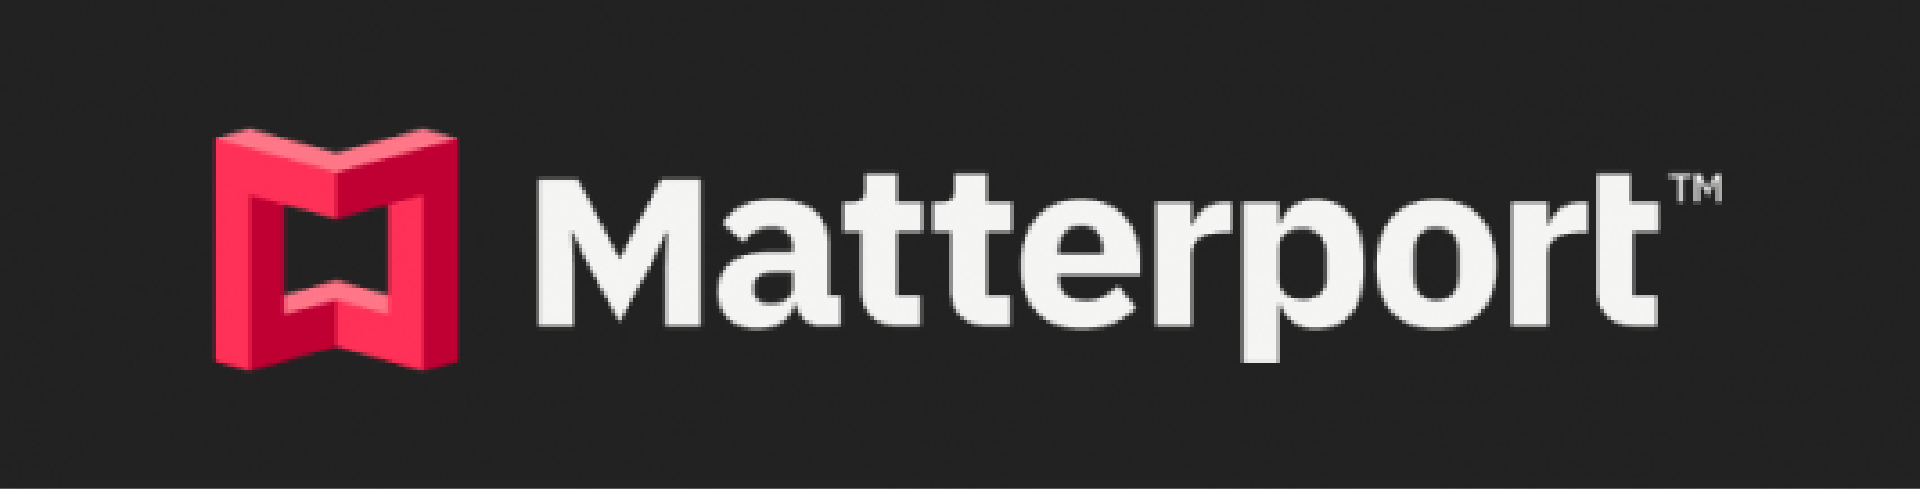 Matterport_Logo_1